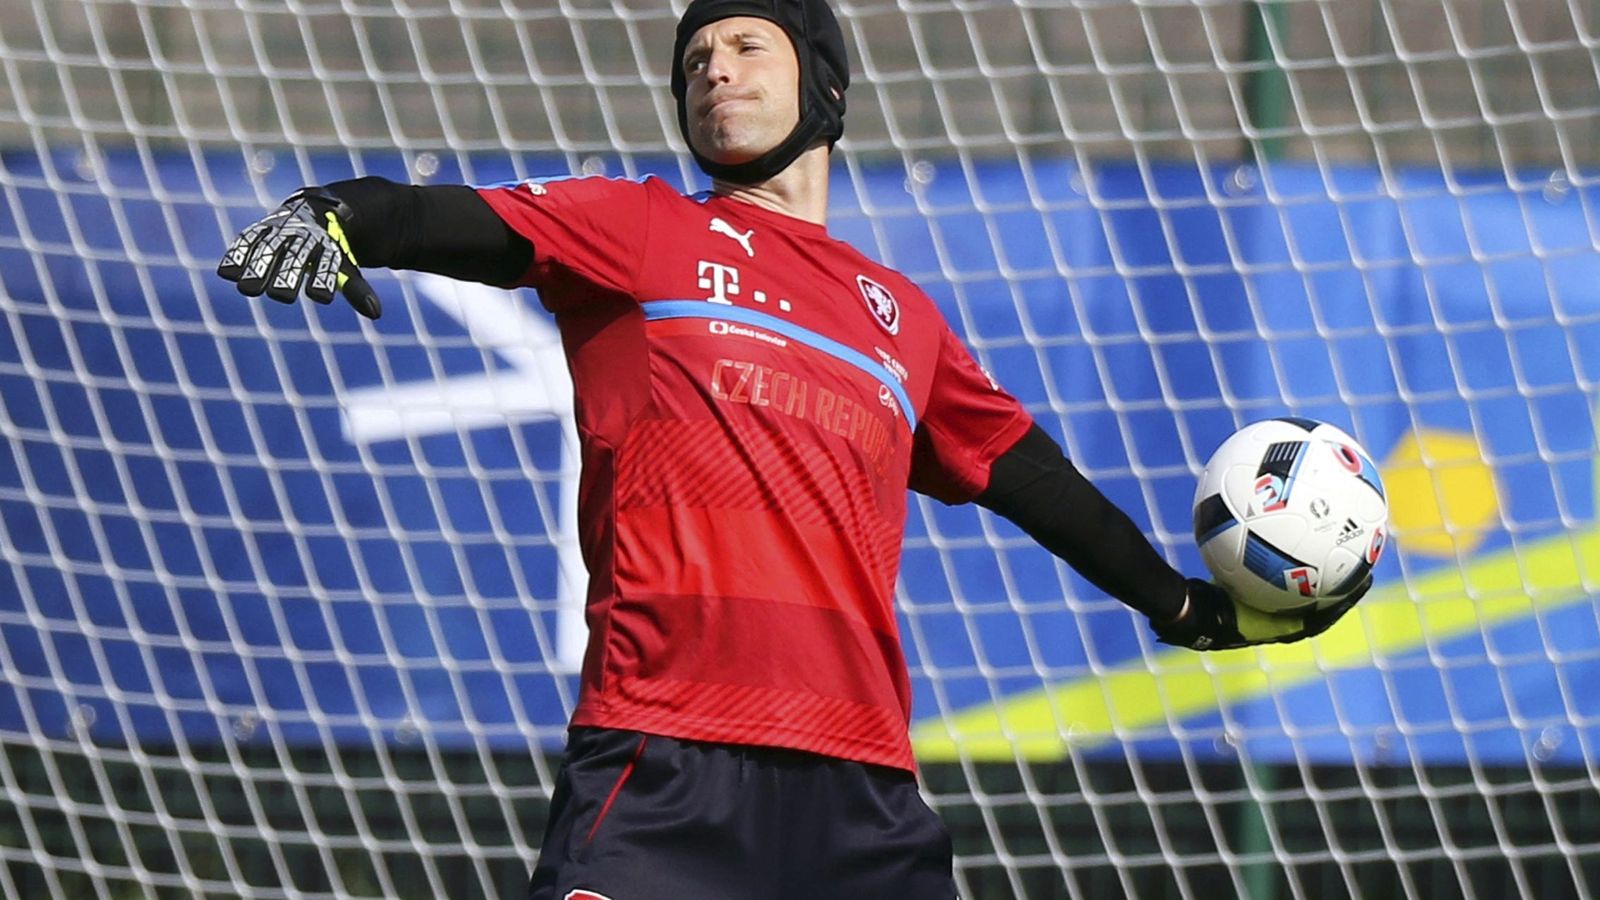 Foto: Petr Cech, portero de la selección checa, durante un entrenamiento en la Eurocopa de Francia (Efe)